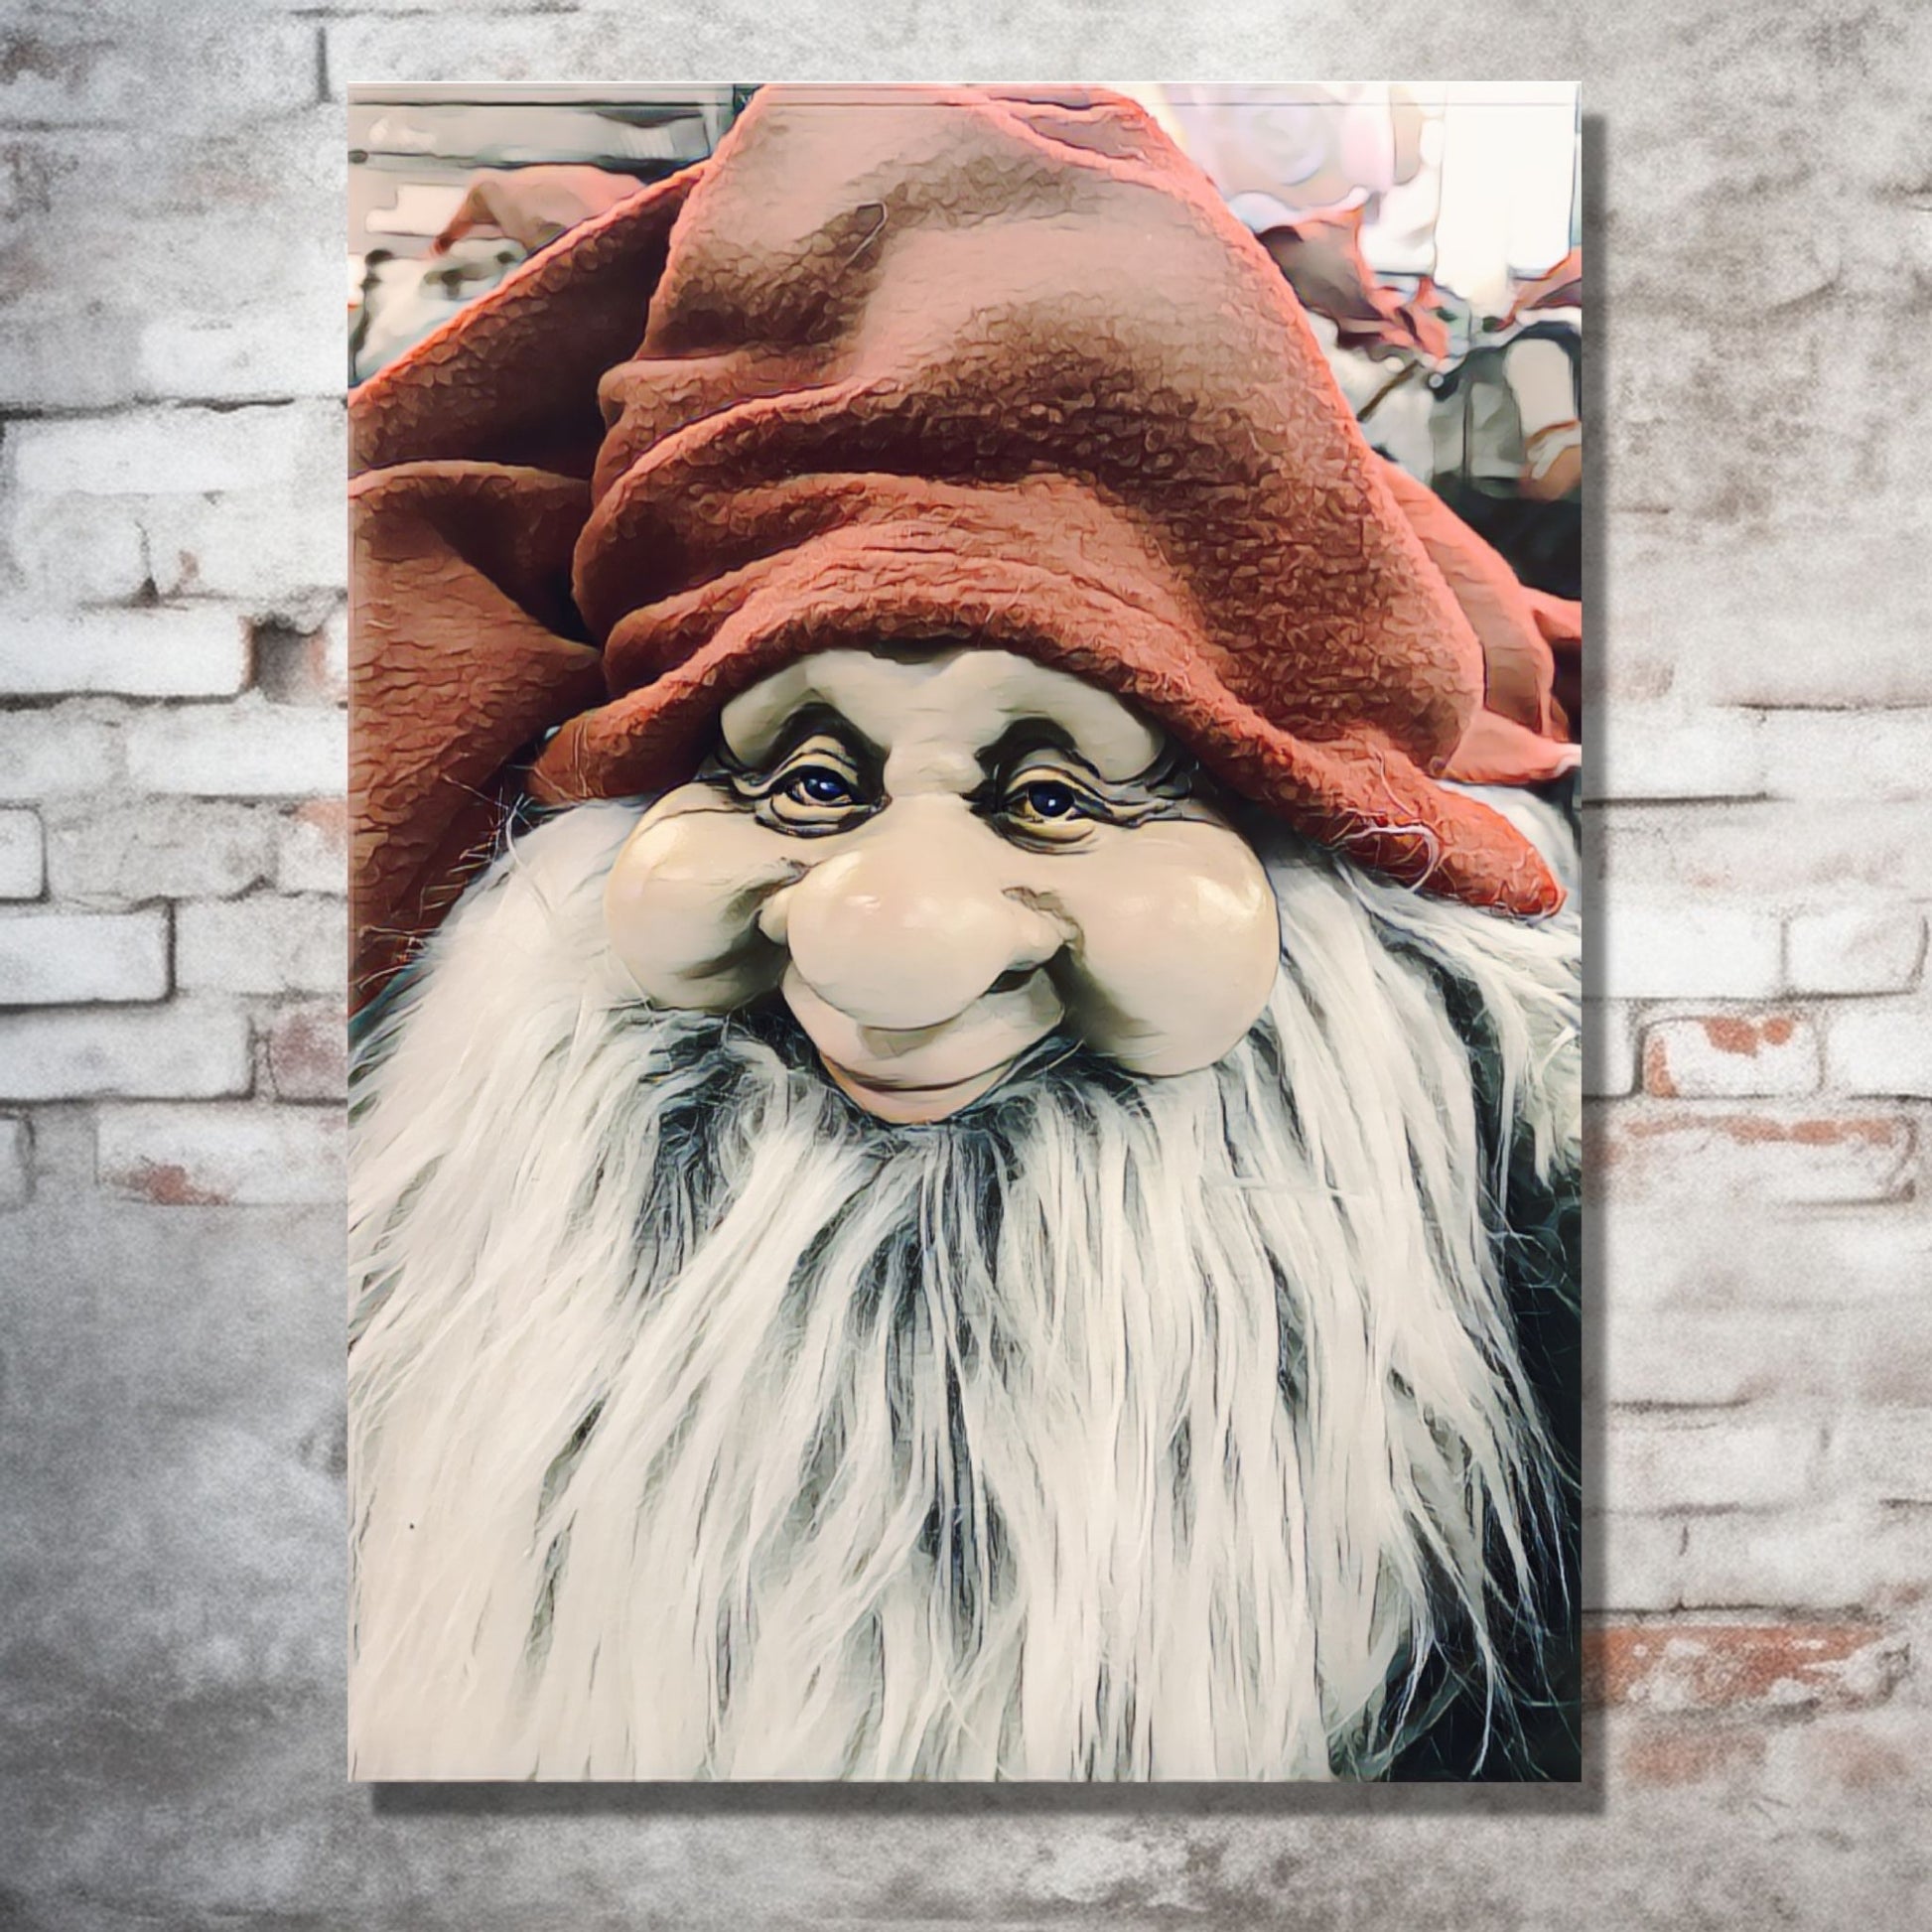 Grafisk motiv av ansiktet til en julenisse med stort, hvitt skjegg og rød nisselue. På bildet henger nissemotivet som lerretsbilde på en murvegg. Under bildet står det en grønn kommode, og ved siden av et juletre og julepakker.